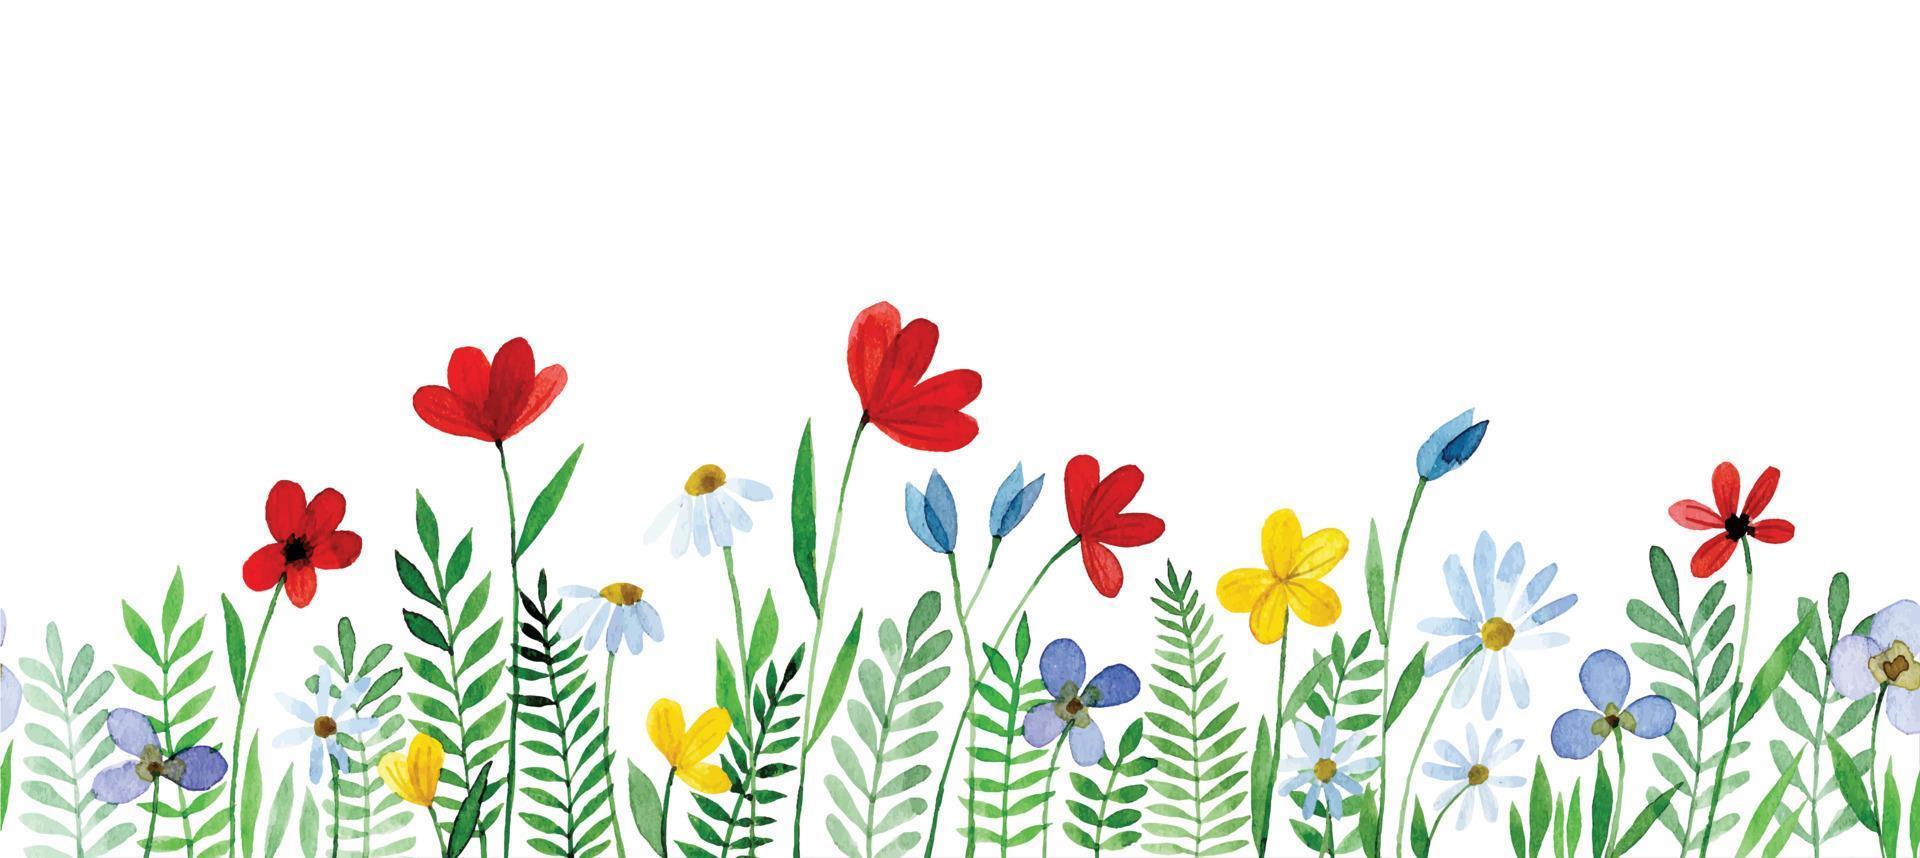 bordo senza giunte dell'acquerello, cornice con fiori di campo. simpatica stampa floreale con fiori rossi e blu. foglie semplici e fiori su sfondo bianco vettore